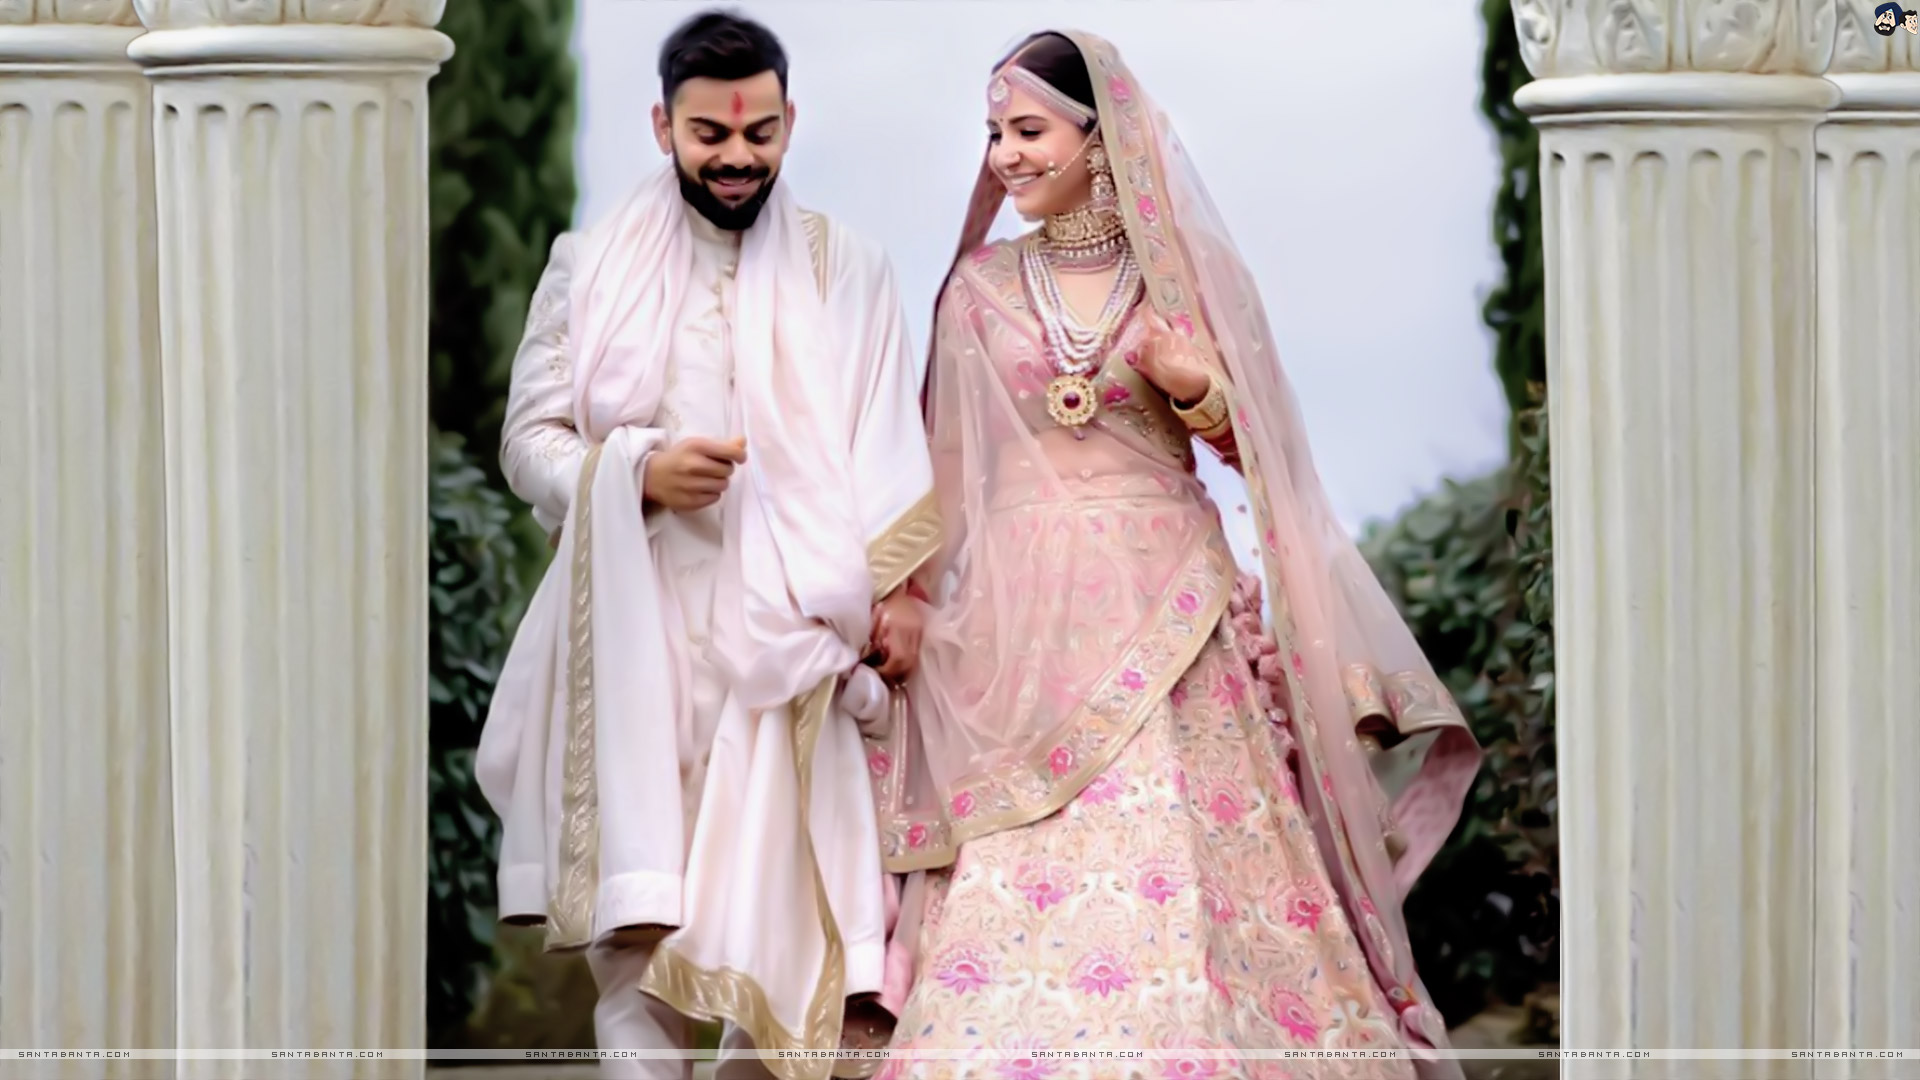 Newly Wedded Couple, Anushka Sharma Kohli & Virat Kohli - Anushka Sharma Wedding Lehenga - HD Wallpaper 